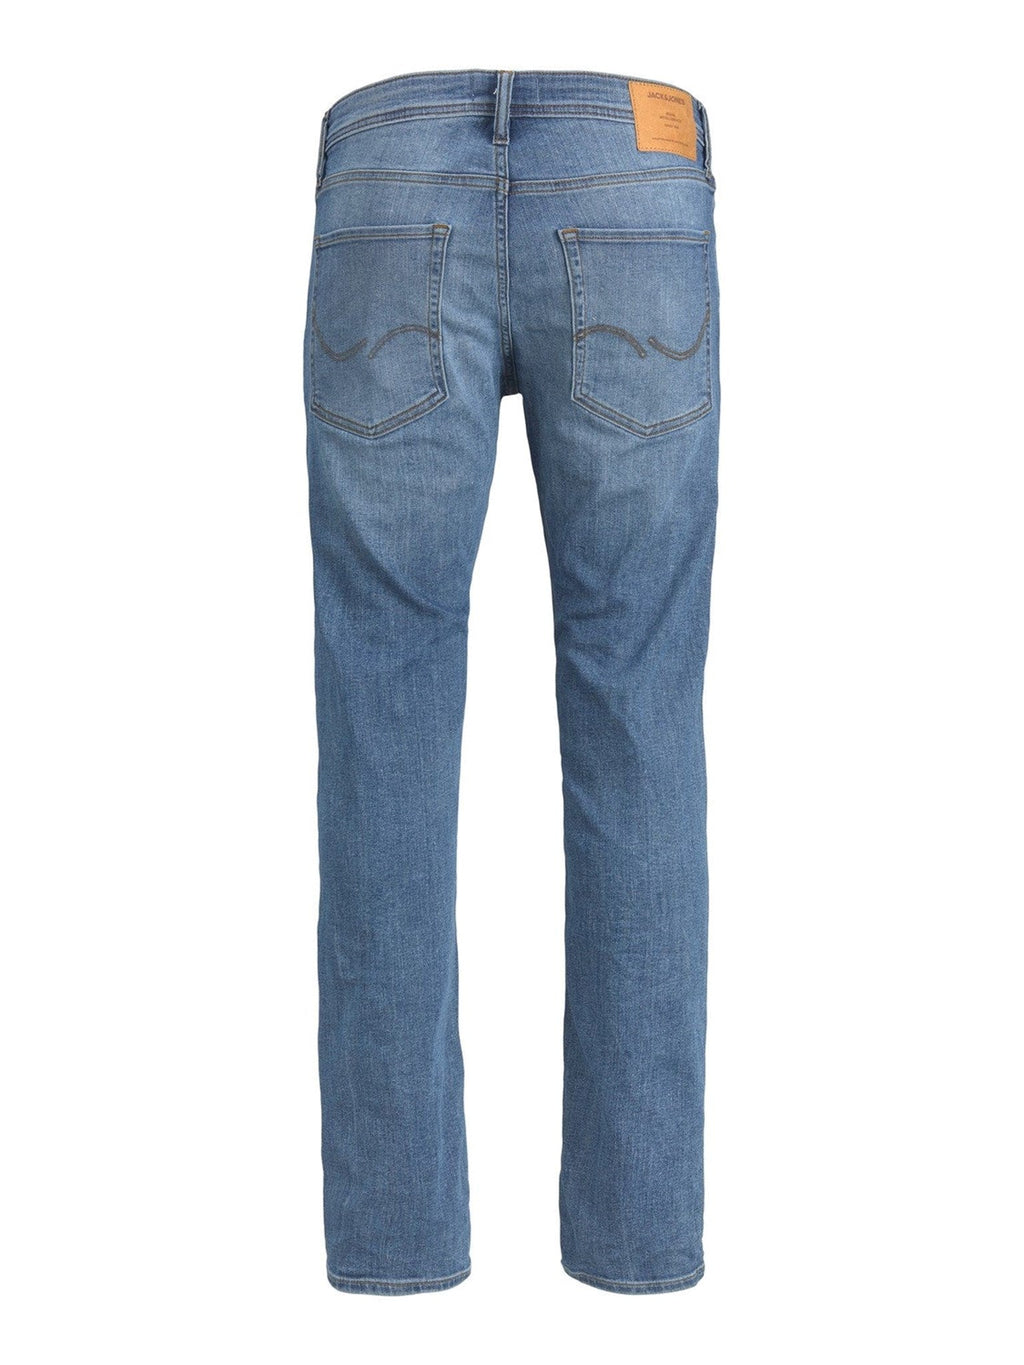 Jeans original Mike - Denim bleu clair